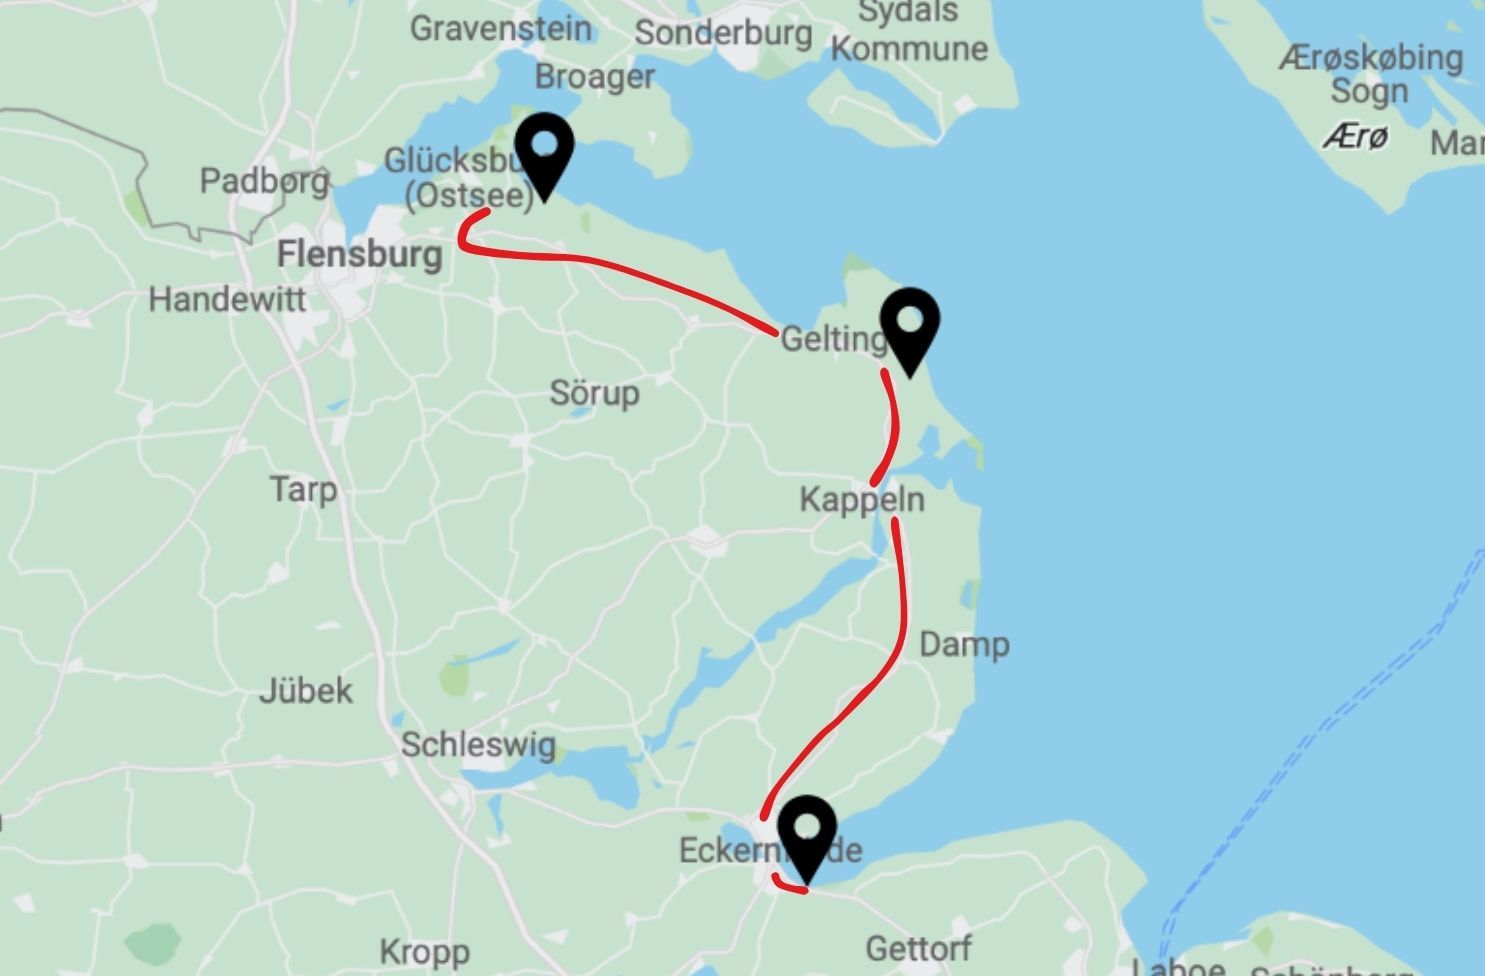 Ostsee-Roadtrip als Vorschau der Stopps auf einer Karte